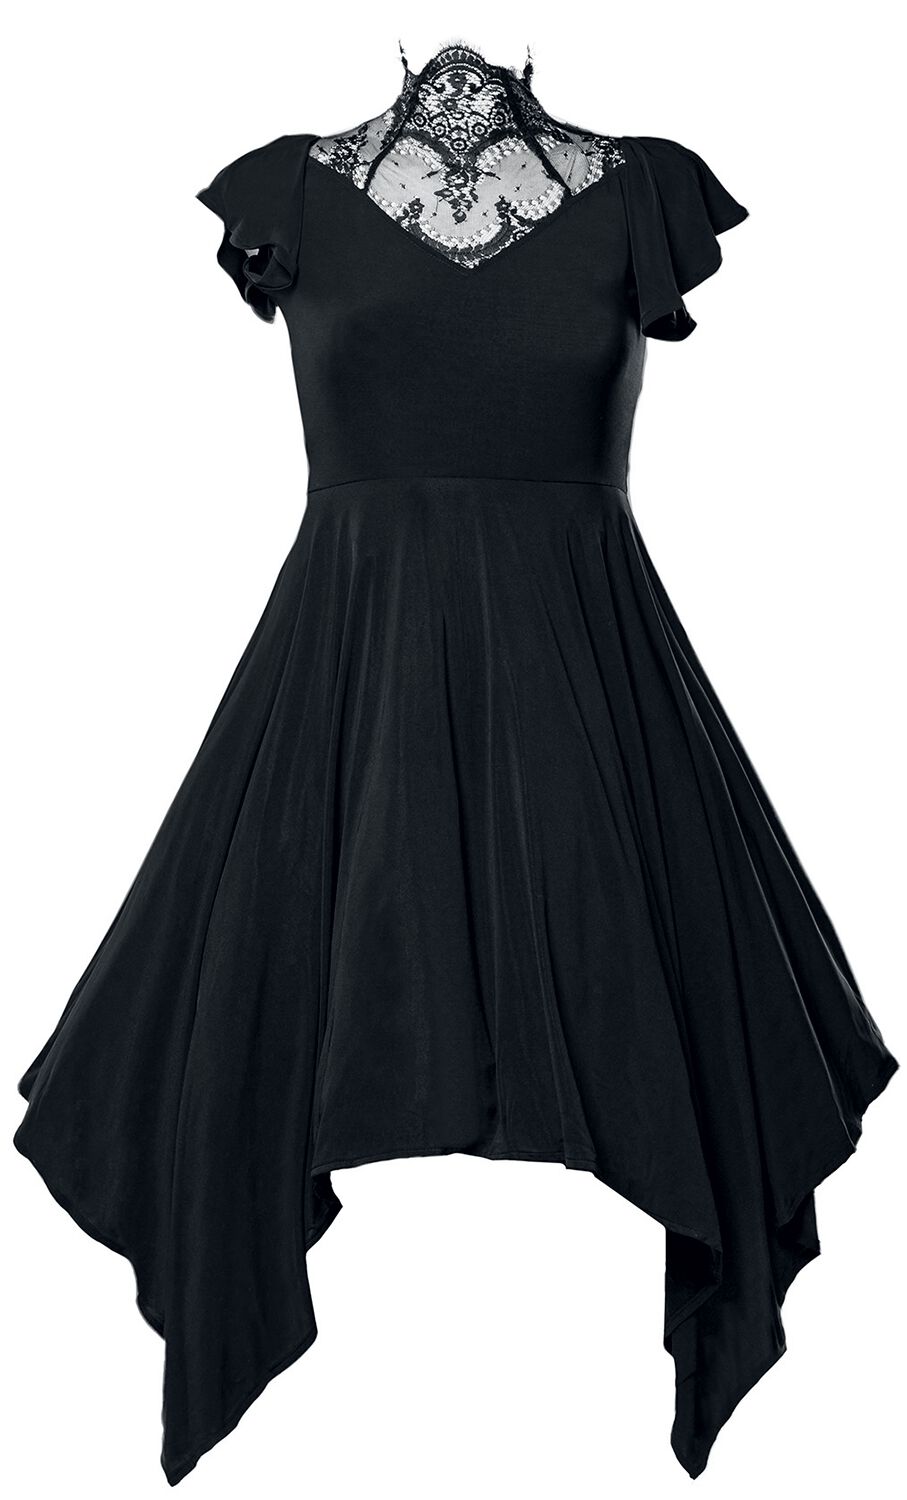 Ocultica - Gothic Kleid knielang - Gothic Kleid - S bis 4XL - für Damen - Größe 3XL - schwarz